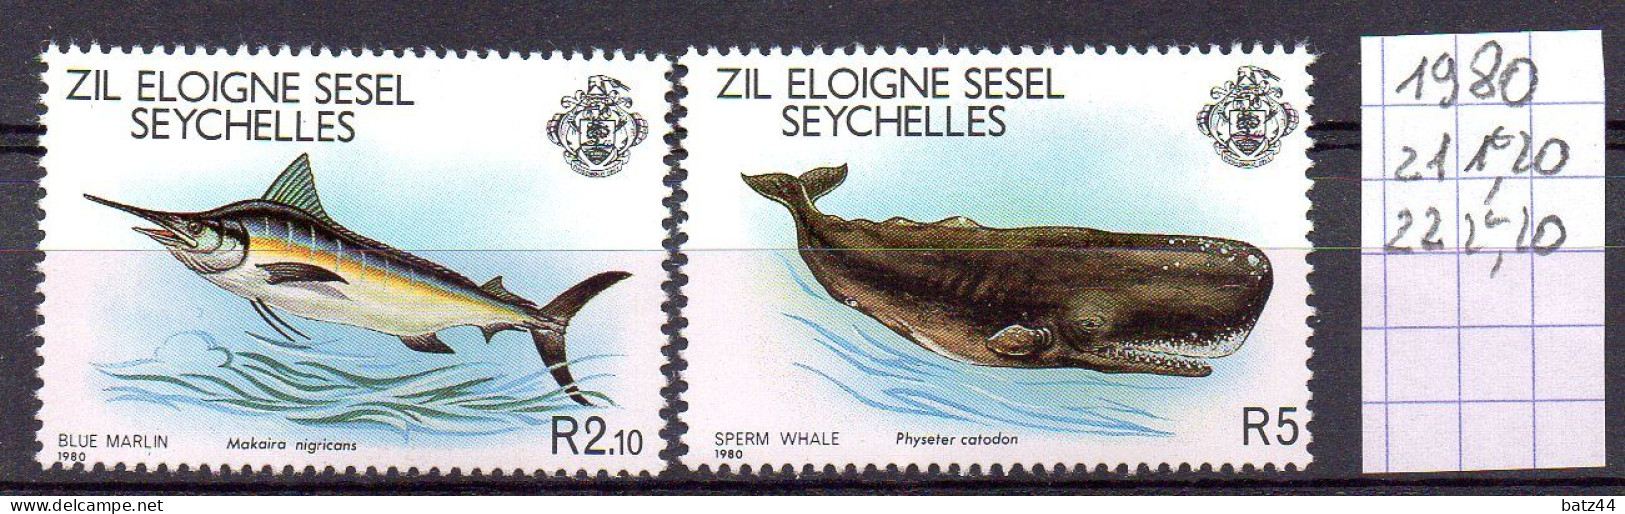 SEYCHELLES ZIL ELOIGNE SESEL Timbre Neuf MNH ** Année Year 1980 N° YT 21 Et 22 - Seychelles (1976-...)